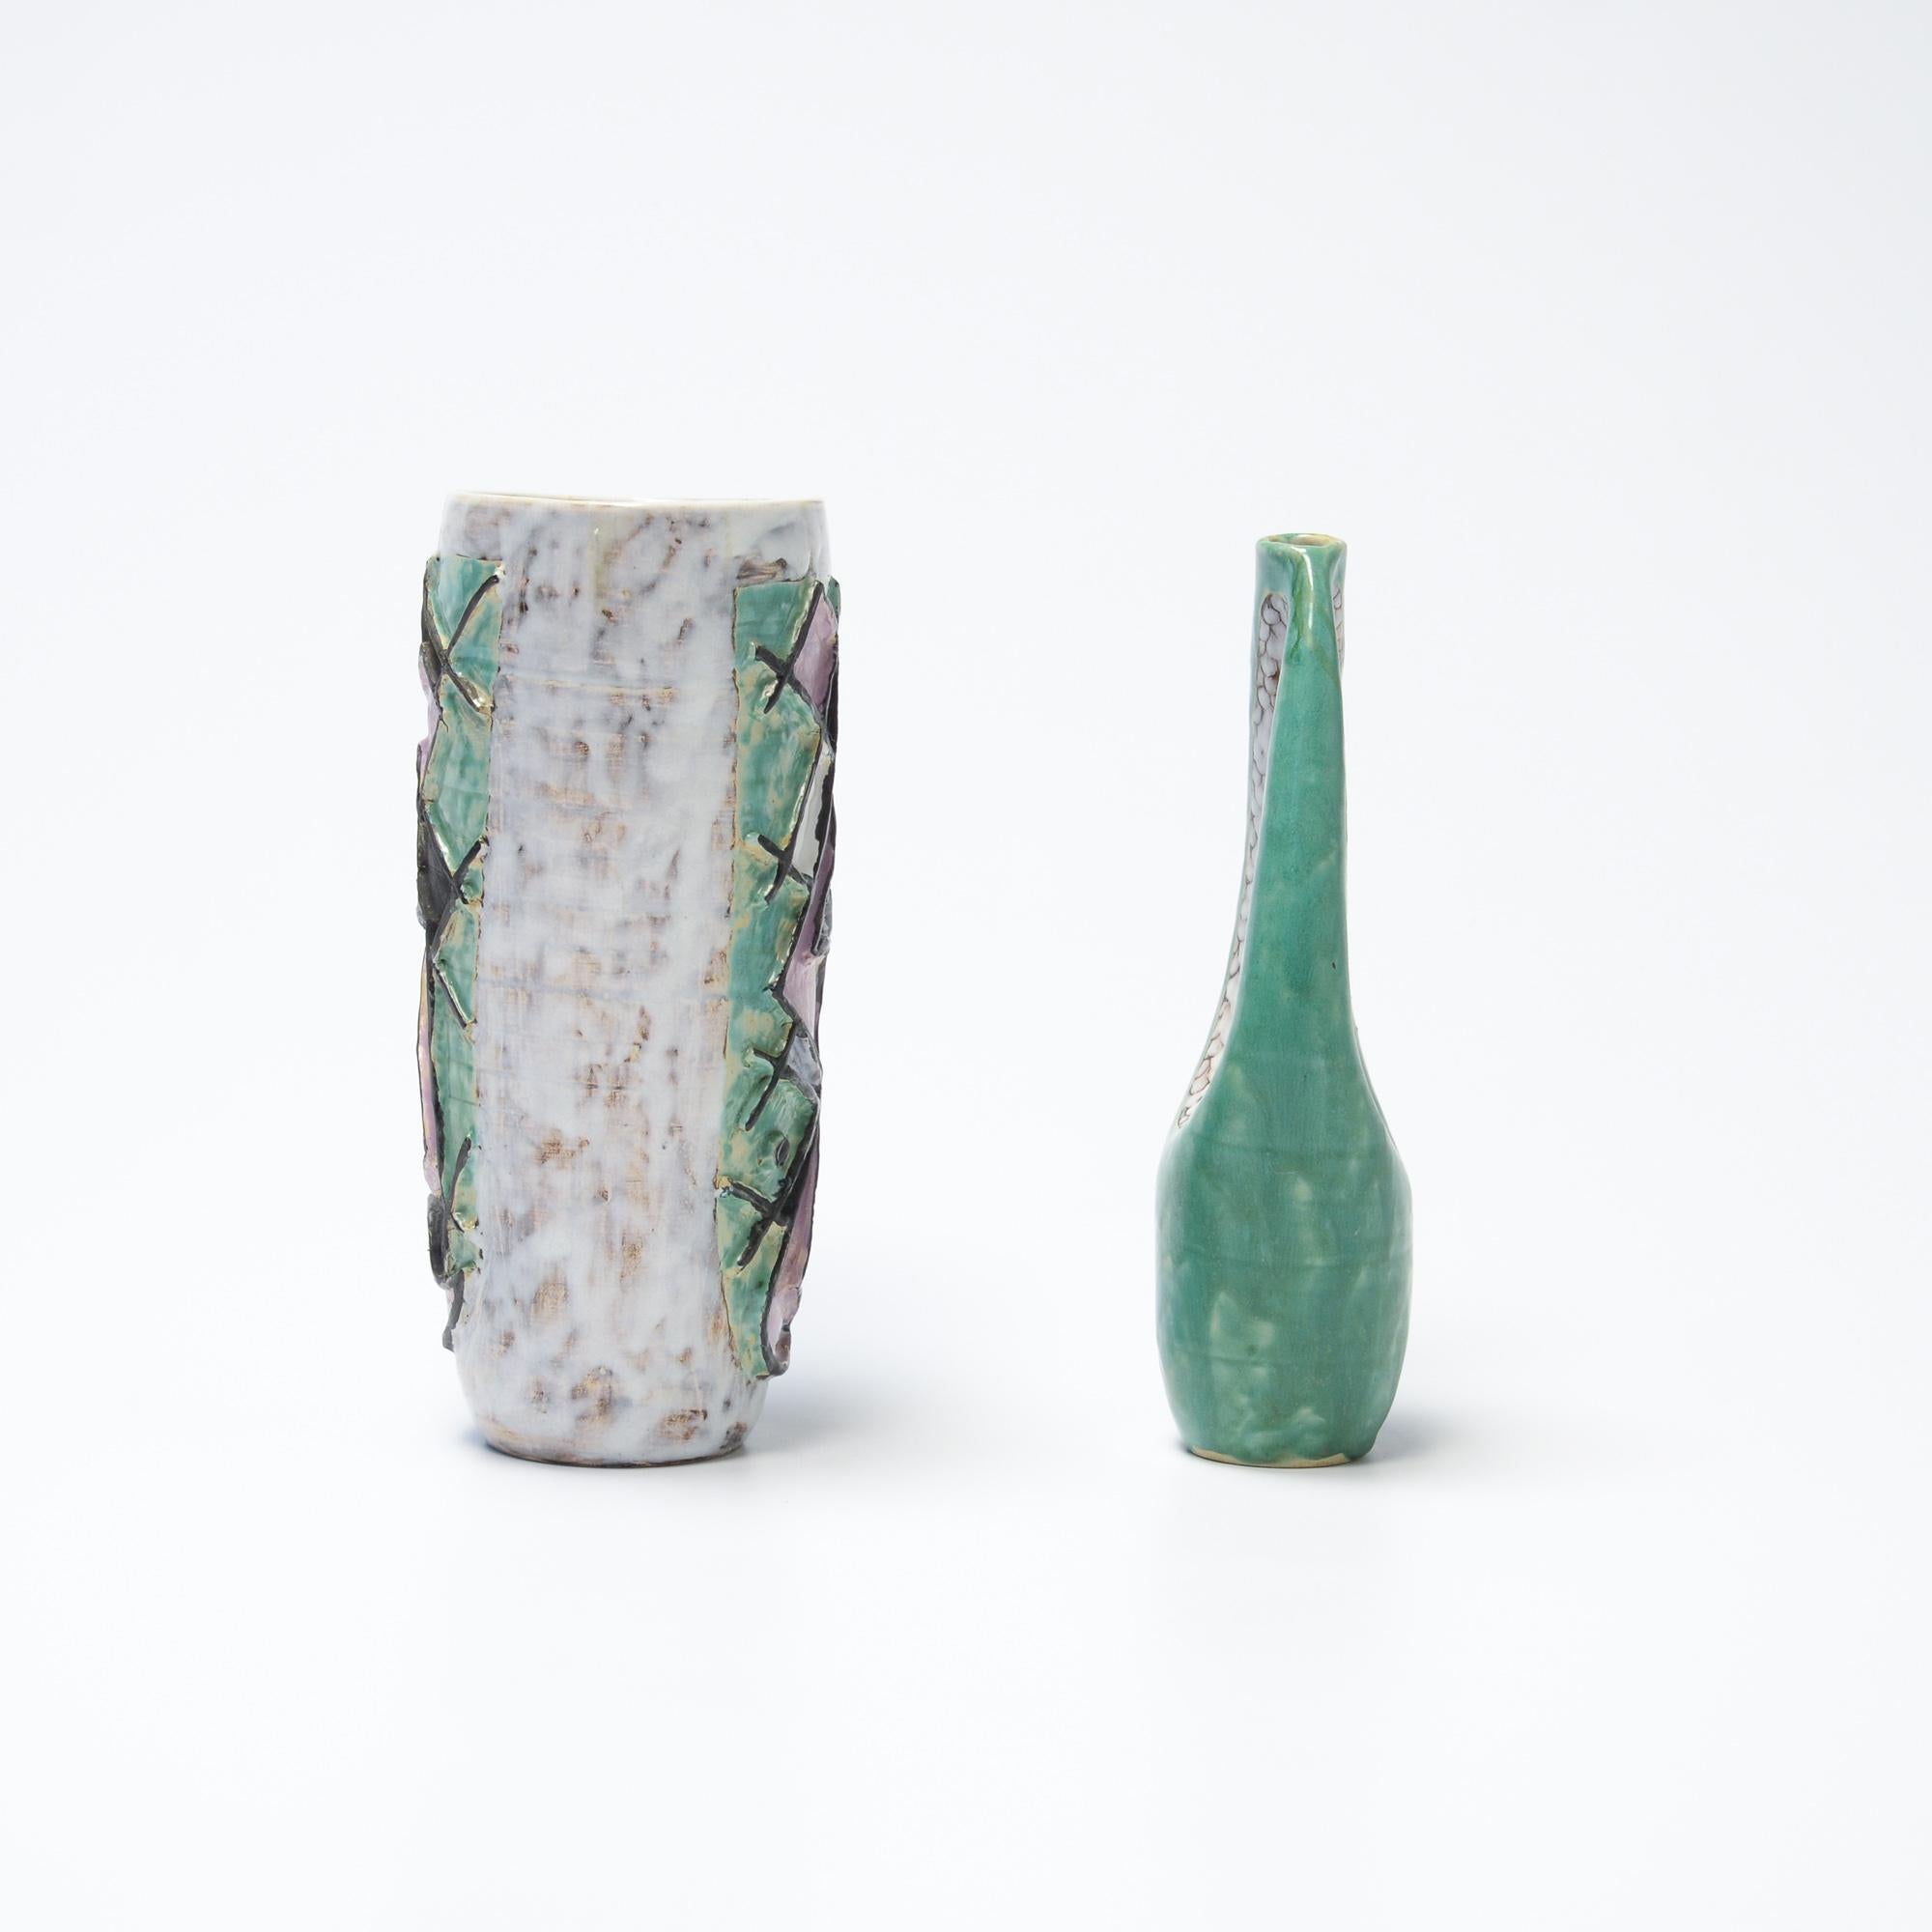 Dieses dekorative Paar Keramikvasen ist auf 1957 datiert.
Es ist ein schönes Set in mintgrün, helllila, schwarz und weiß.
Die Vasen sind in sehr gutem Zustand. Beide Vasen sind markiert.
 